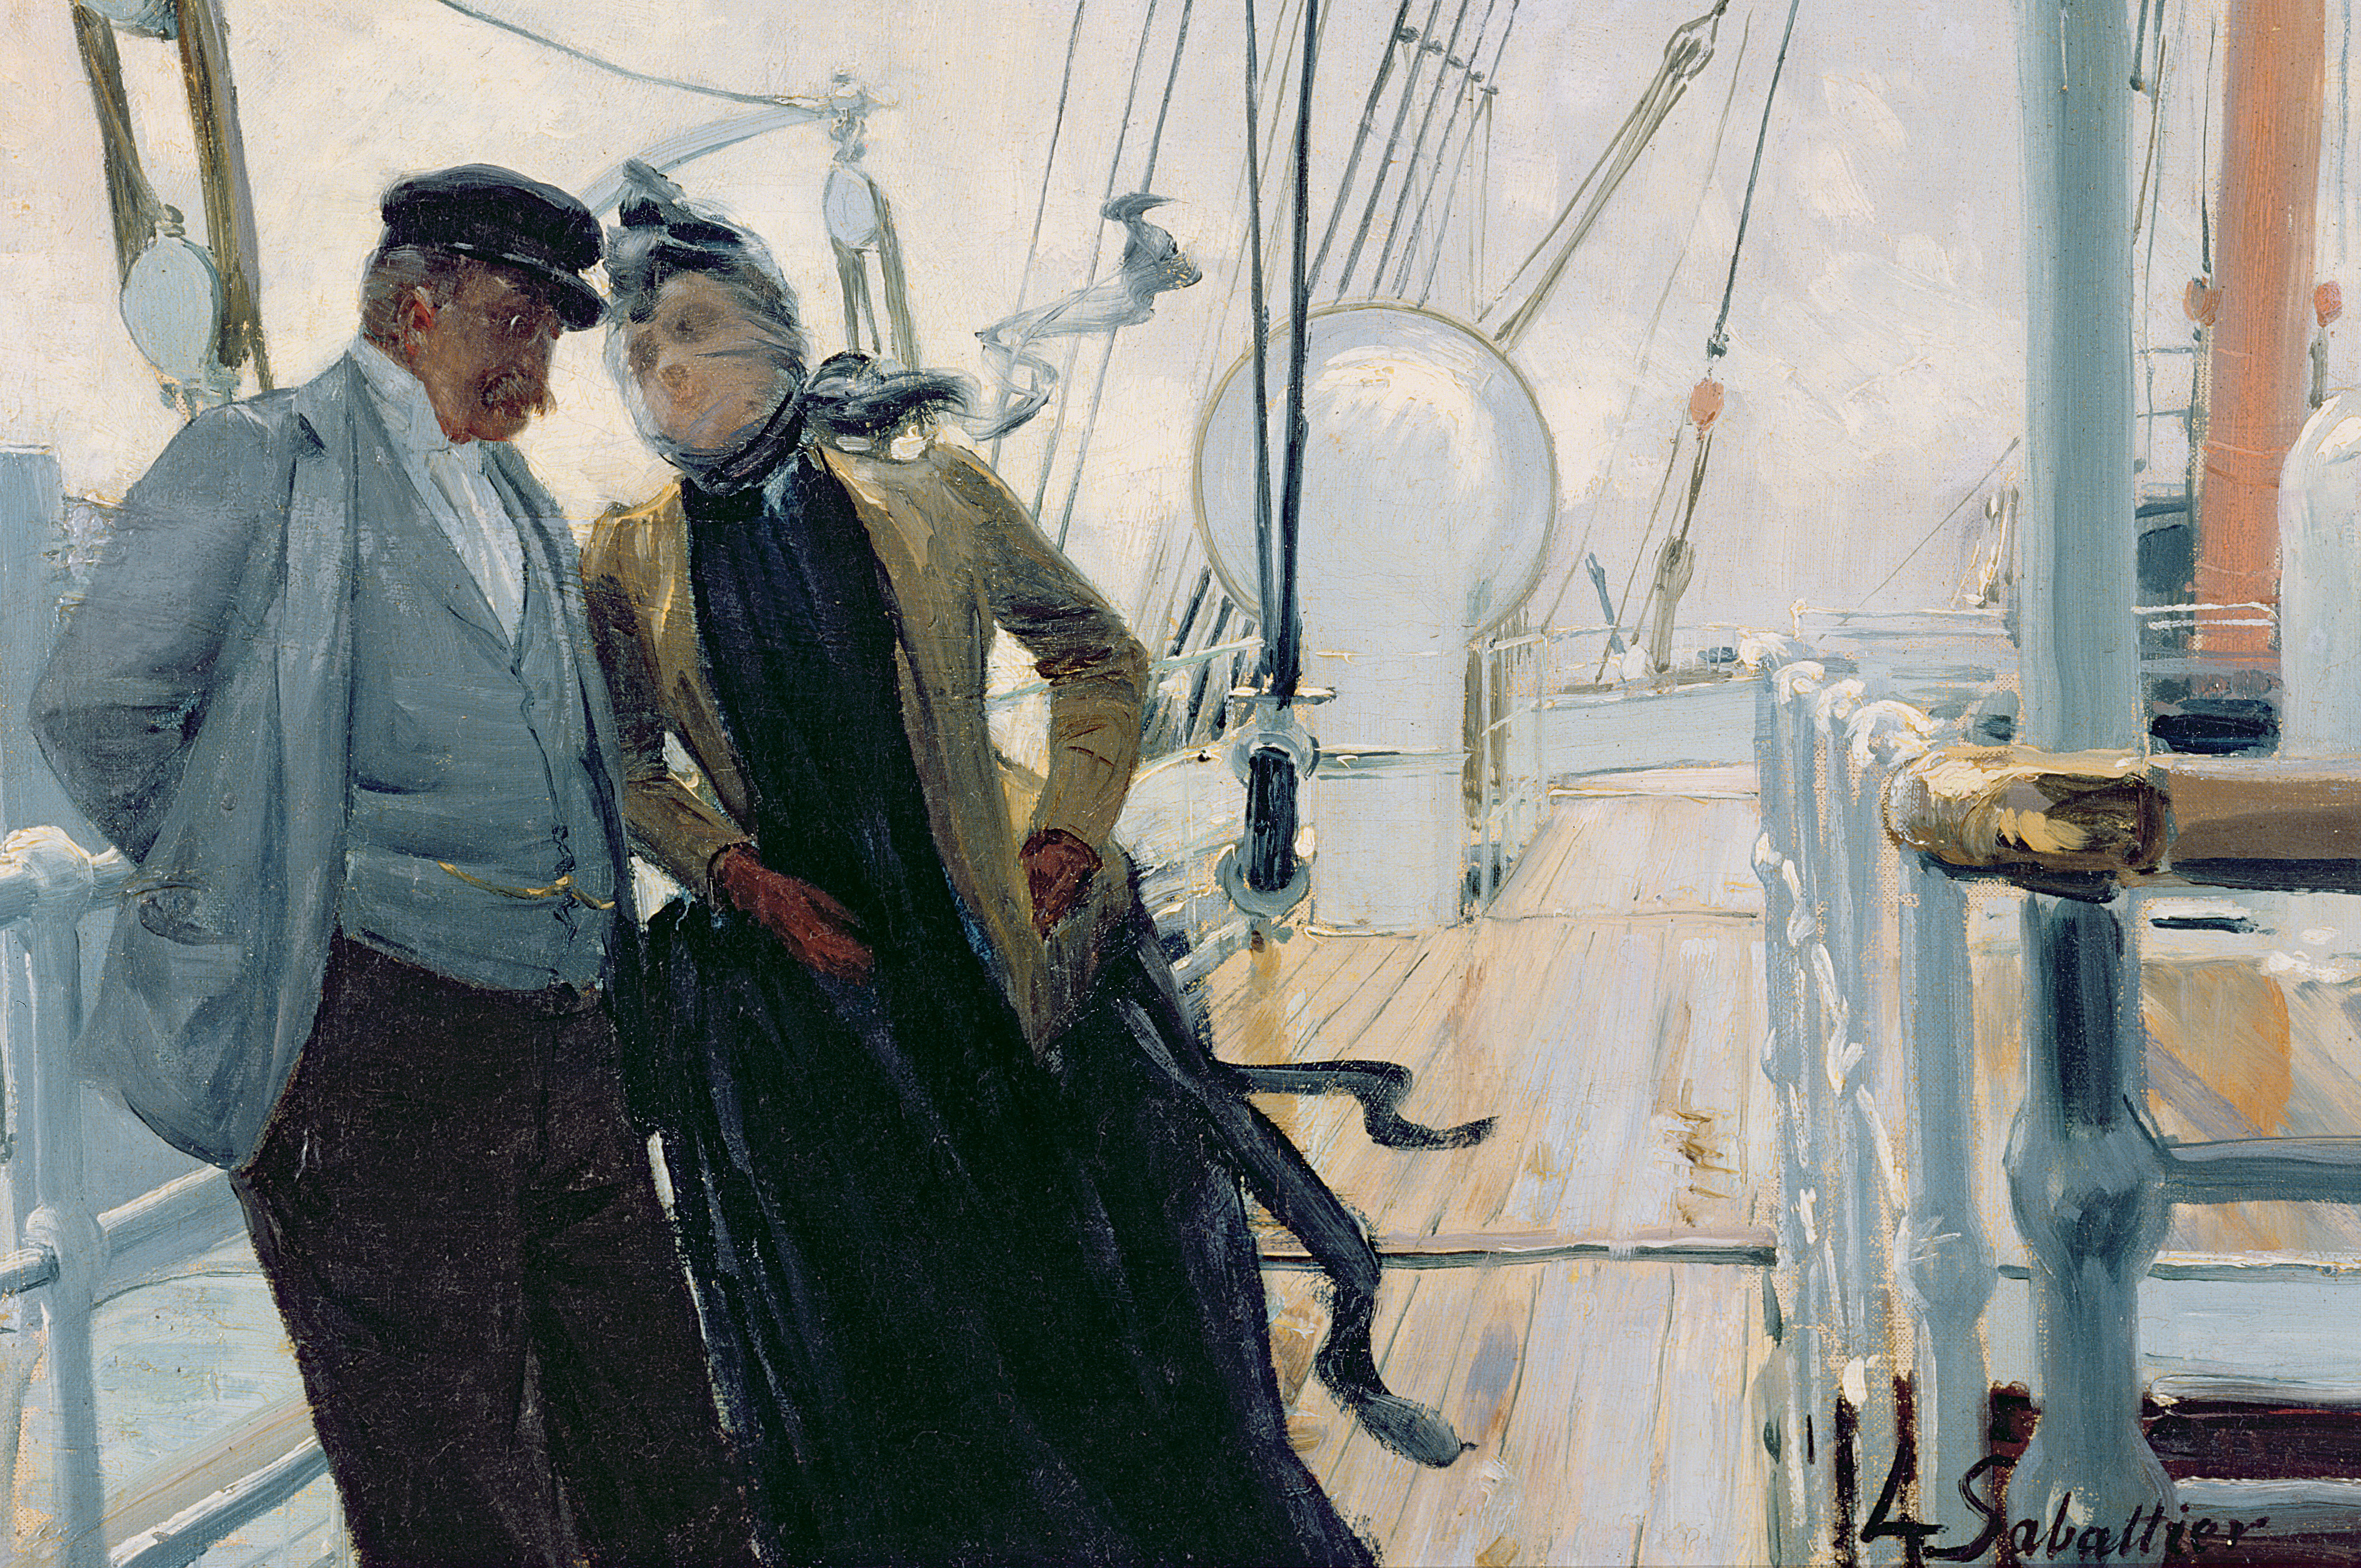 Лежал на палубе. Луи Реми Сабатье. Луи-Реми Сабатье (1863-1935). Художник Louis Rémy Sabattier. Капитан на палубе корабля.